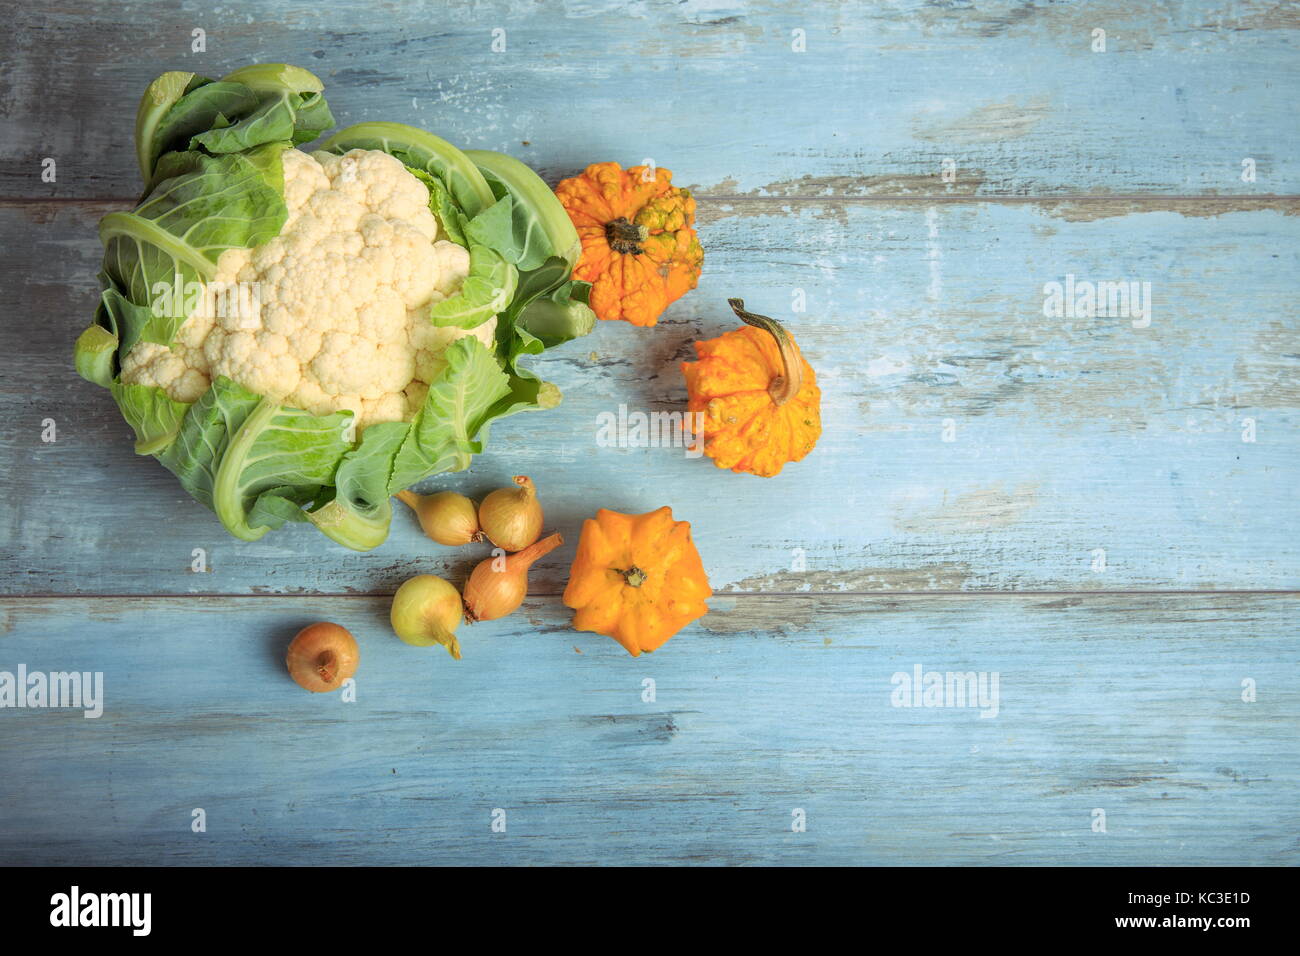 La zucca decorativa, cavolfiori e cipolle su un rustico in legno di colore blu sullo sfondo. il mangiare sano, concetto vegetariano. Foto Stock